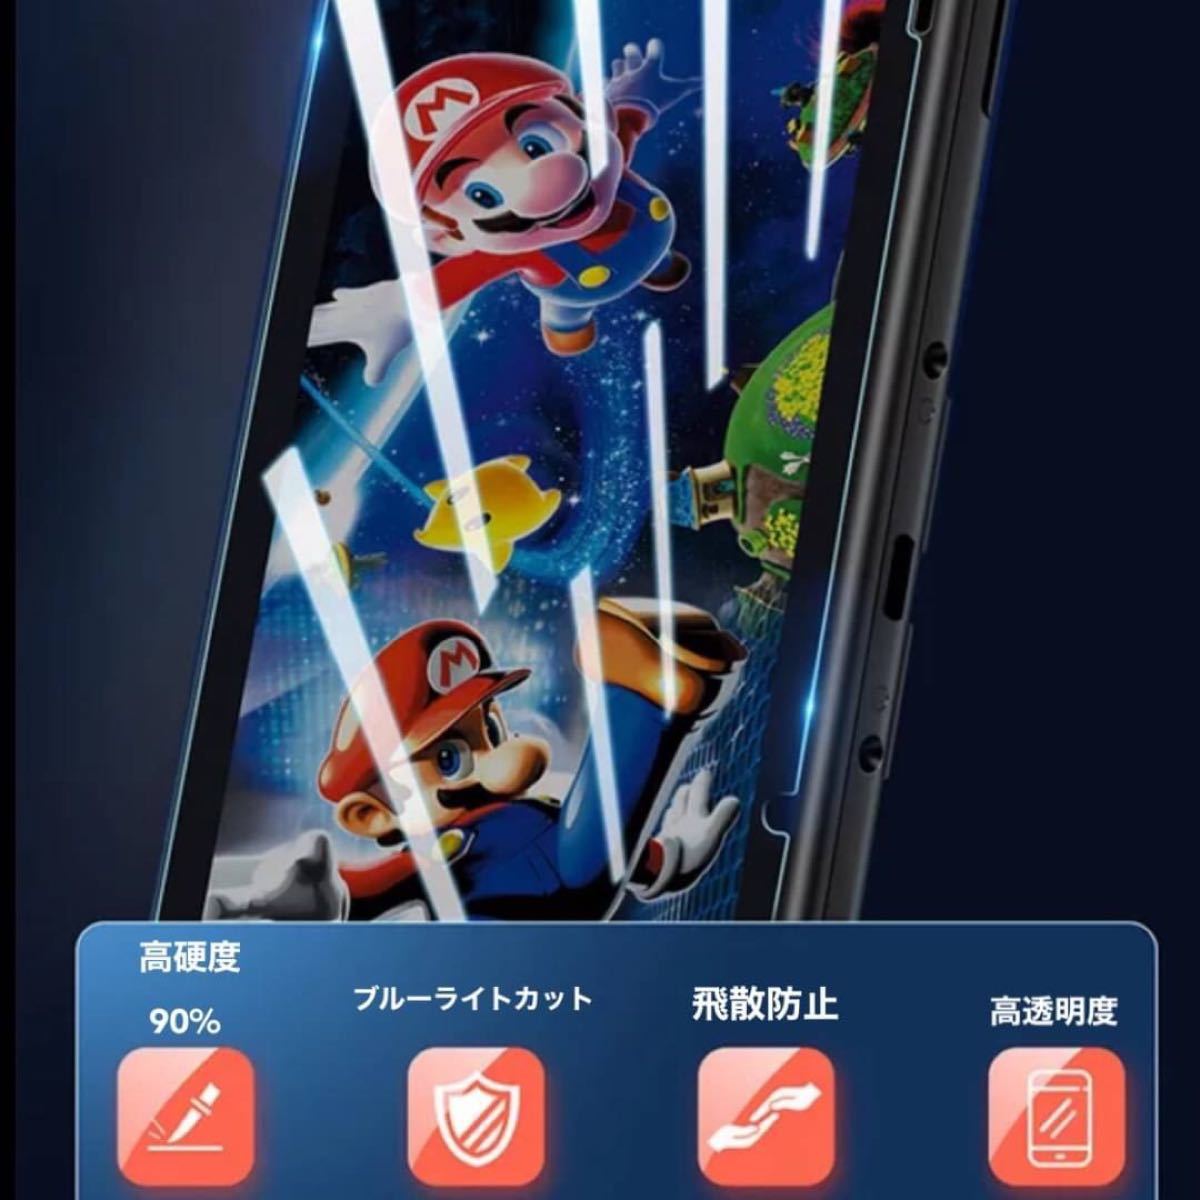 ★任天堂 スイッチ Switch ブルーライト カット ガラスフィルム 液晶 画面